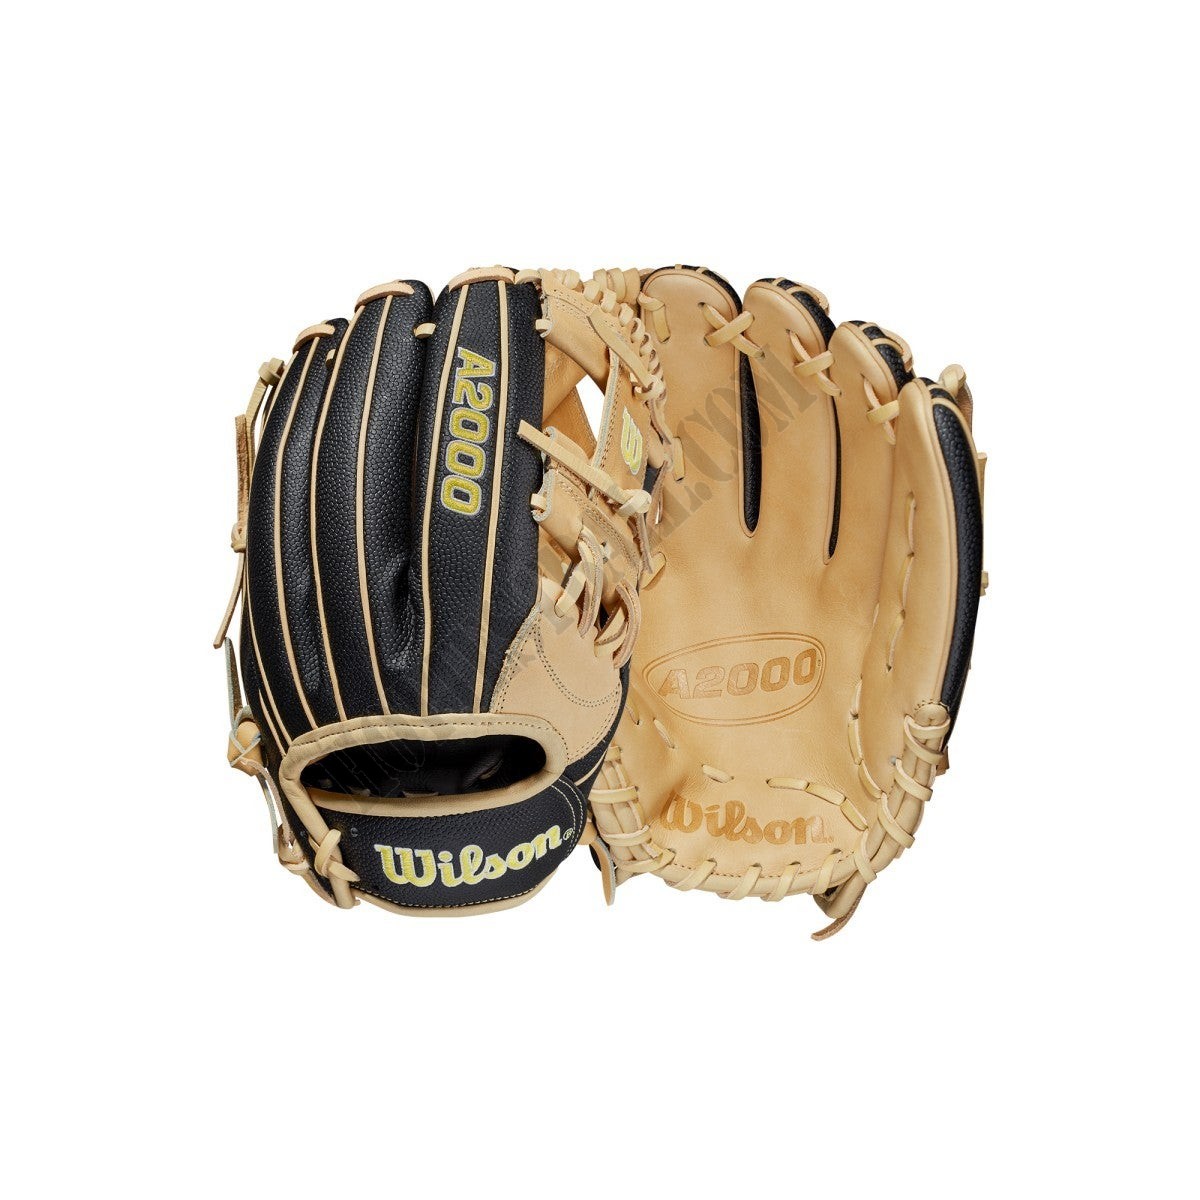 2021 A2000 1787SS 11.75" Infield Baseball Glove ● Wilson Promotions - 2021 A2000 1787SS 11.75" Infield Baseball Glove ● Wilson Promotions